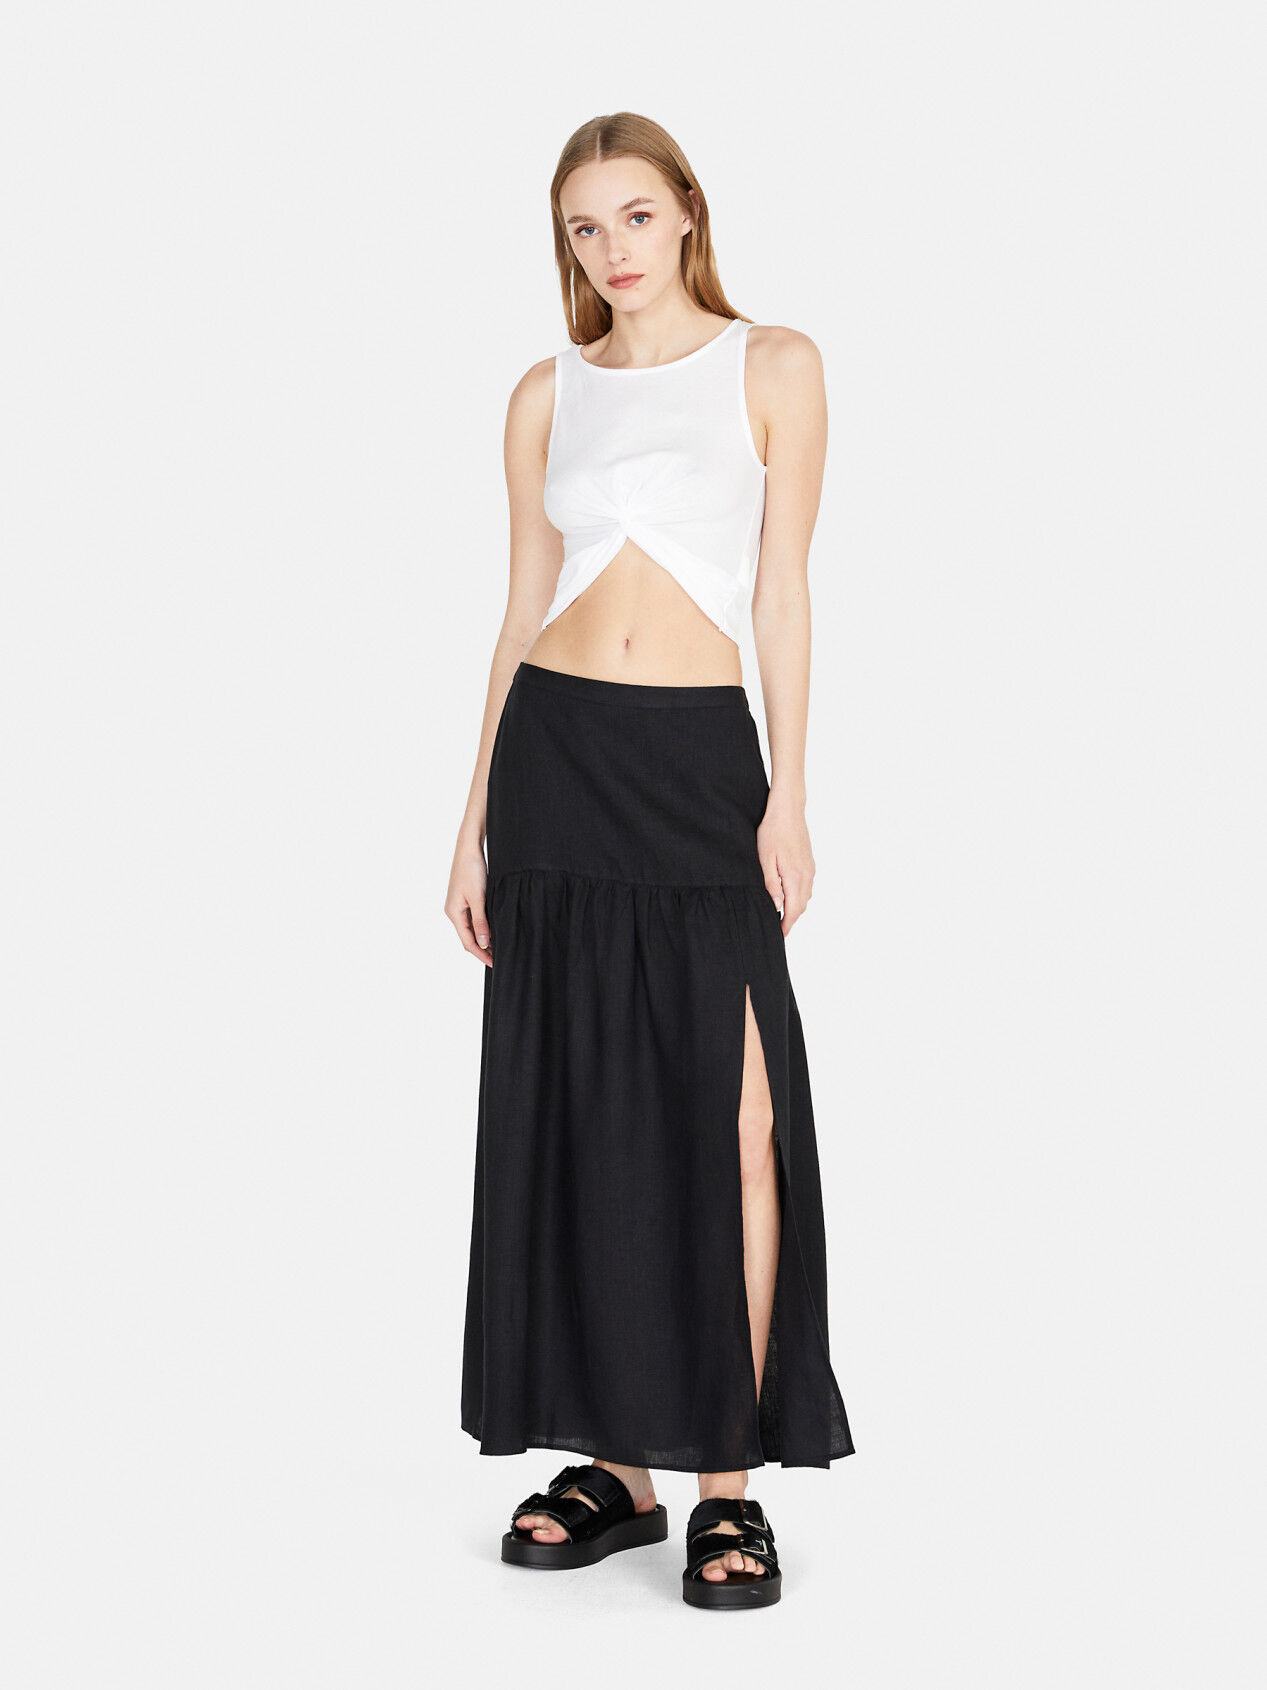 Long skirt in linen, Black - Sisley